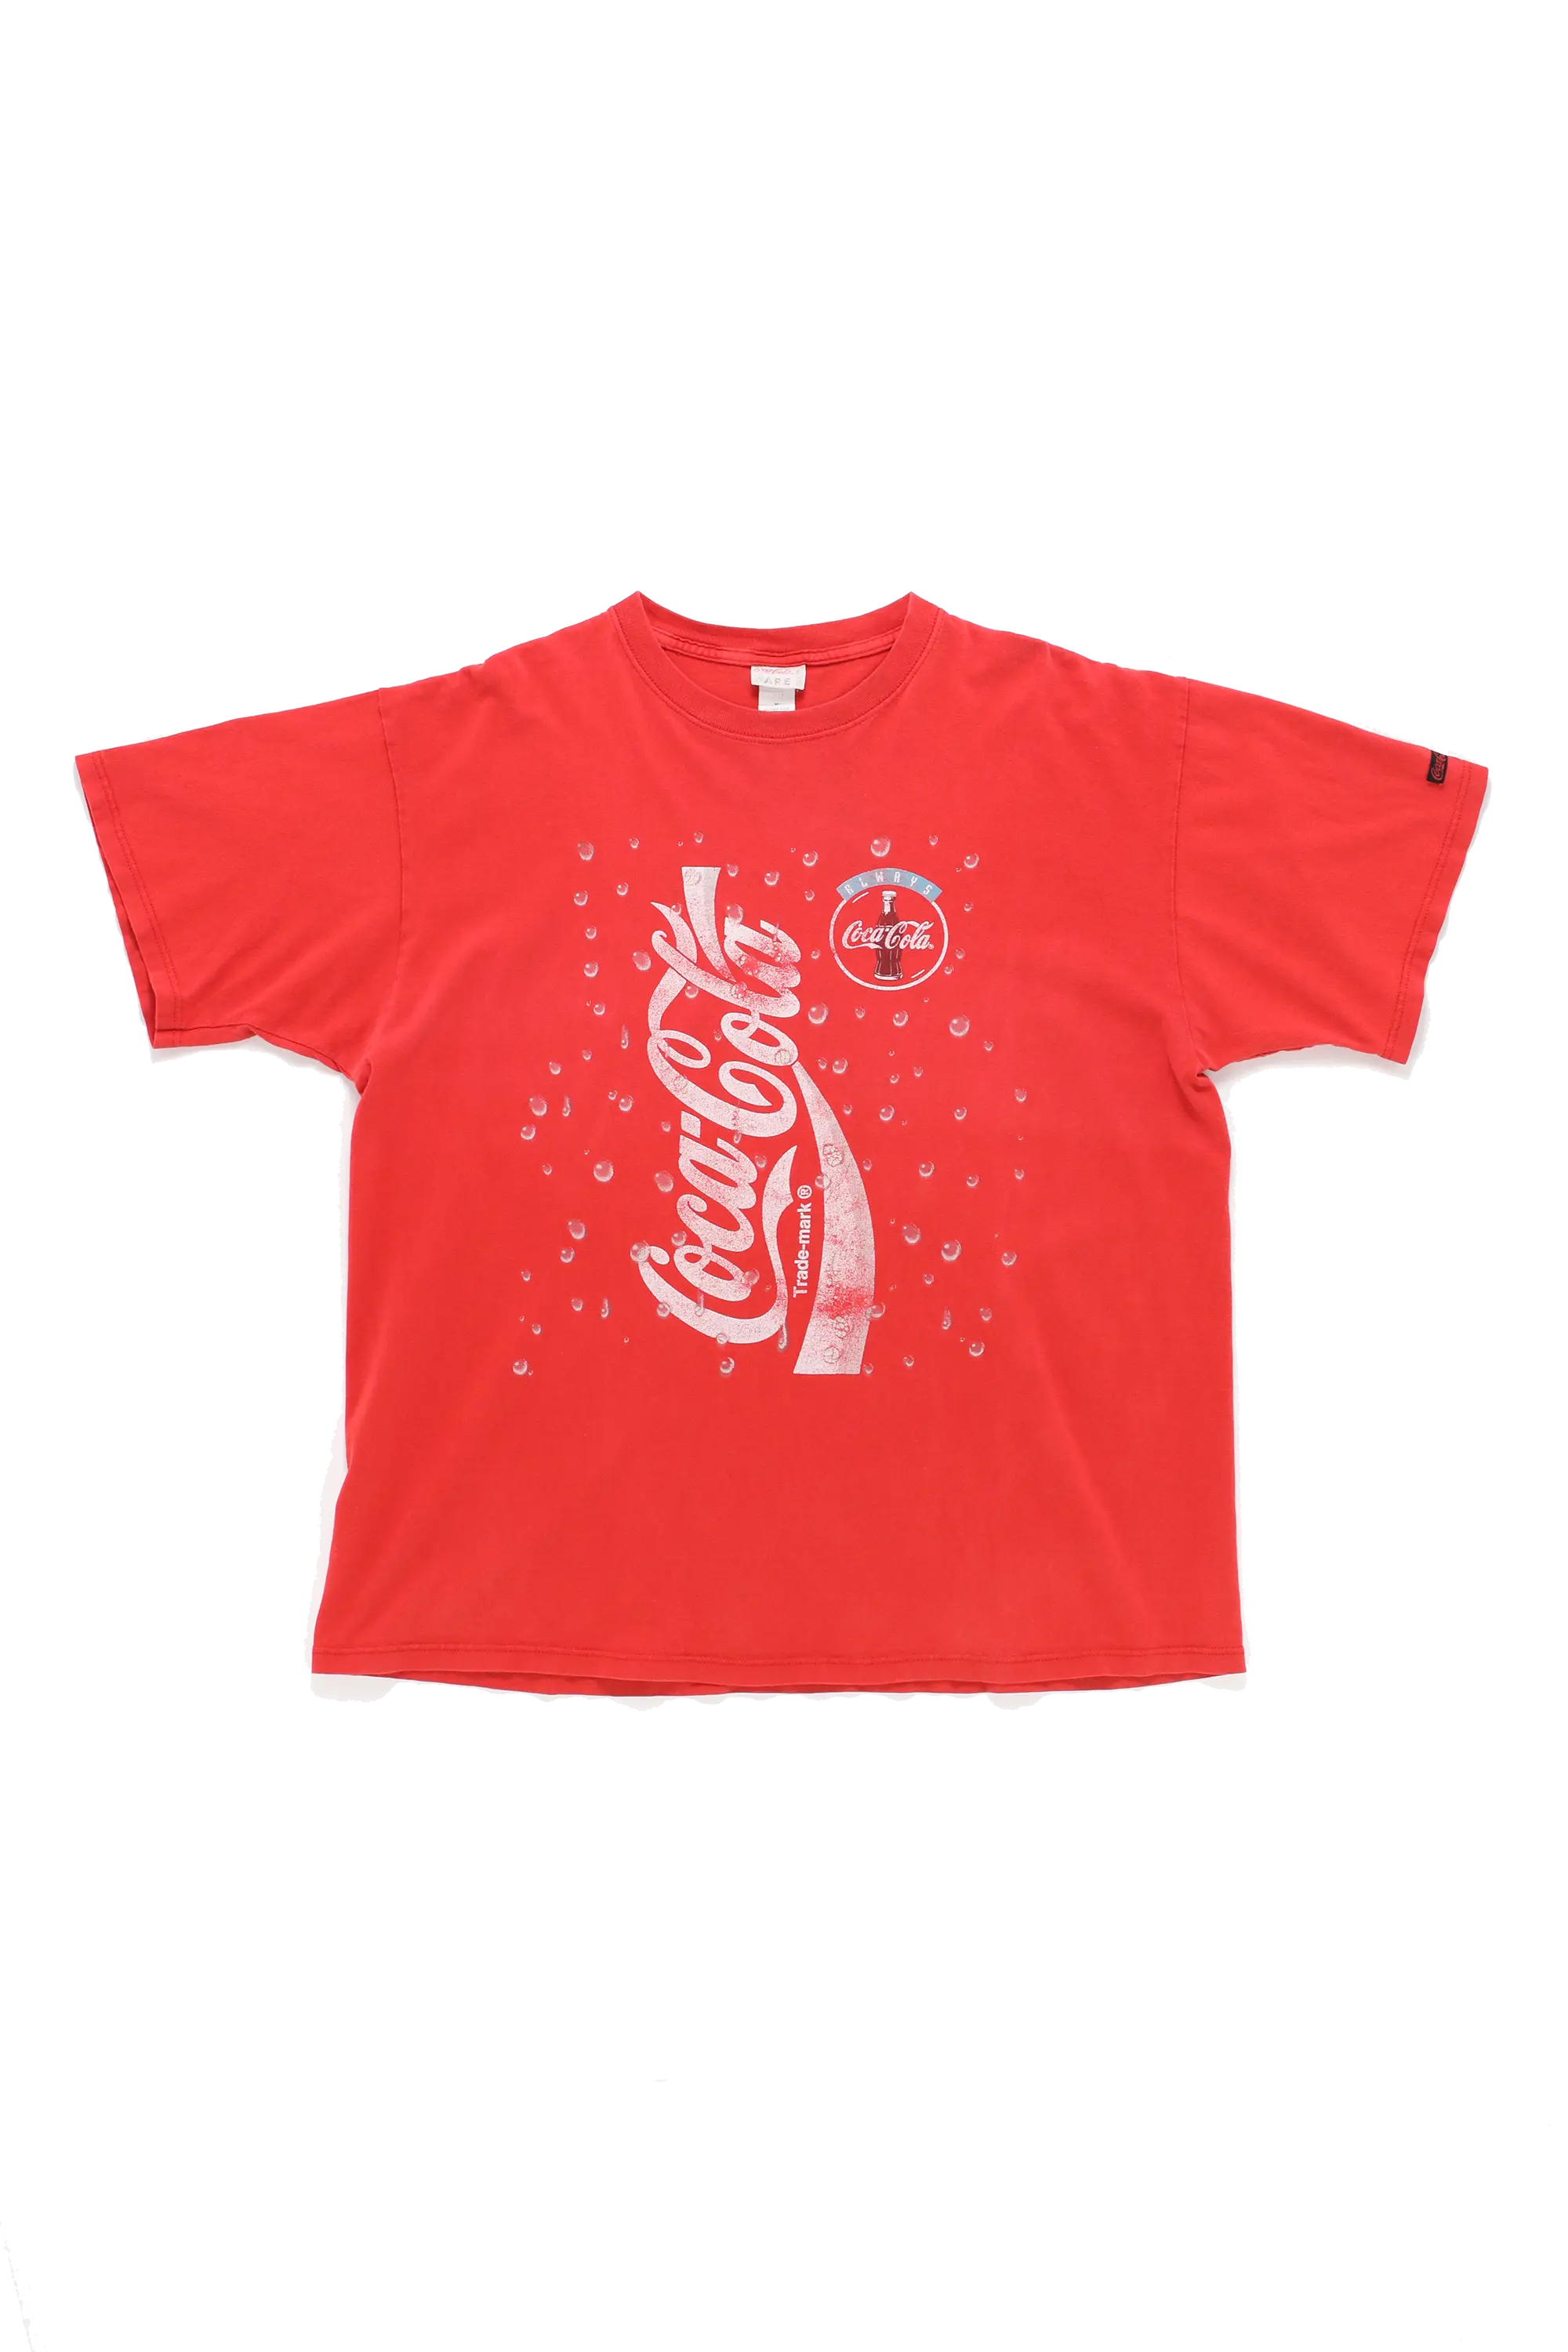 Official '99 Coca Cola T.